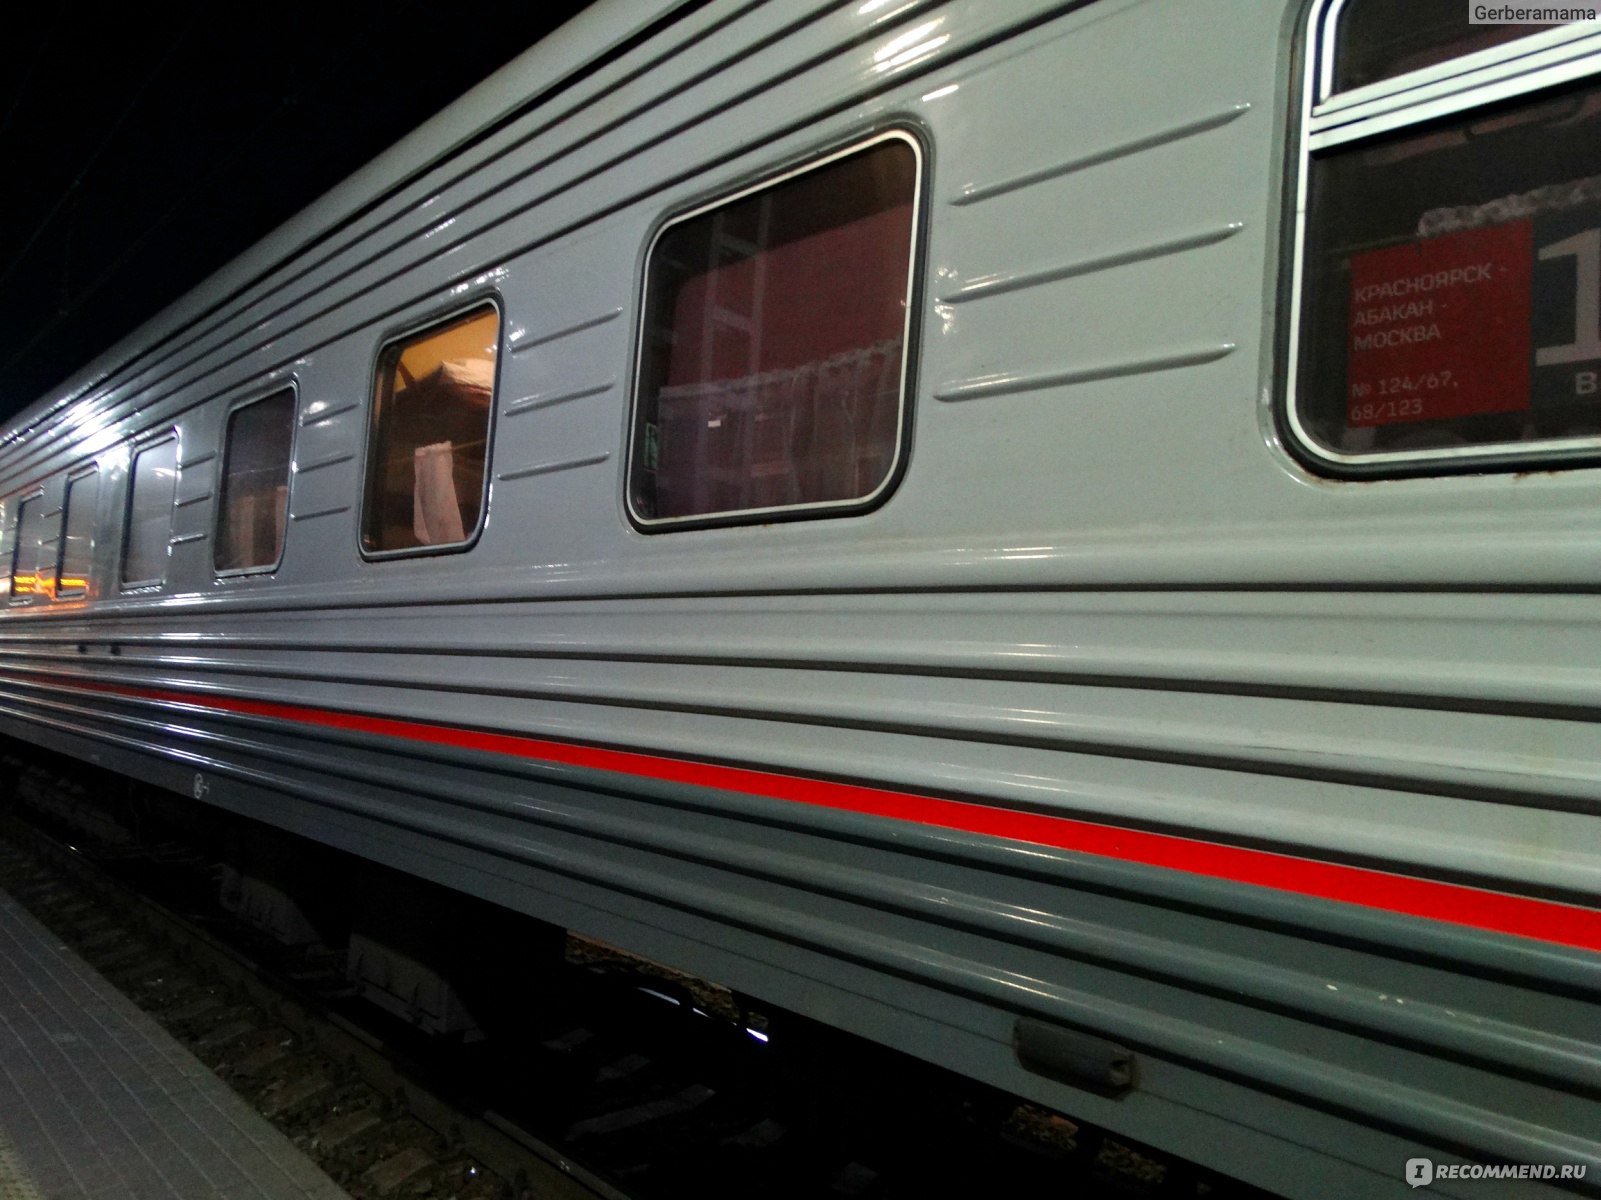 фирменный поезд волга 059а санкт петербург нижний новгород